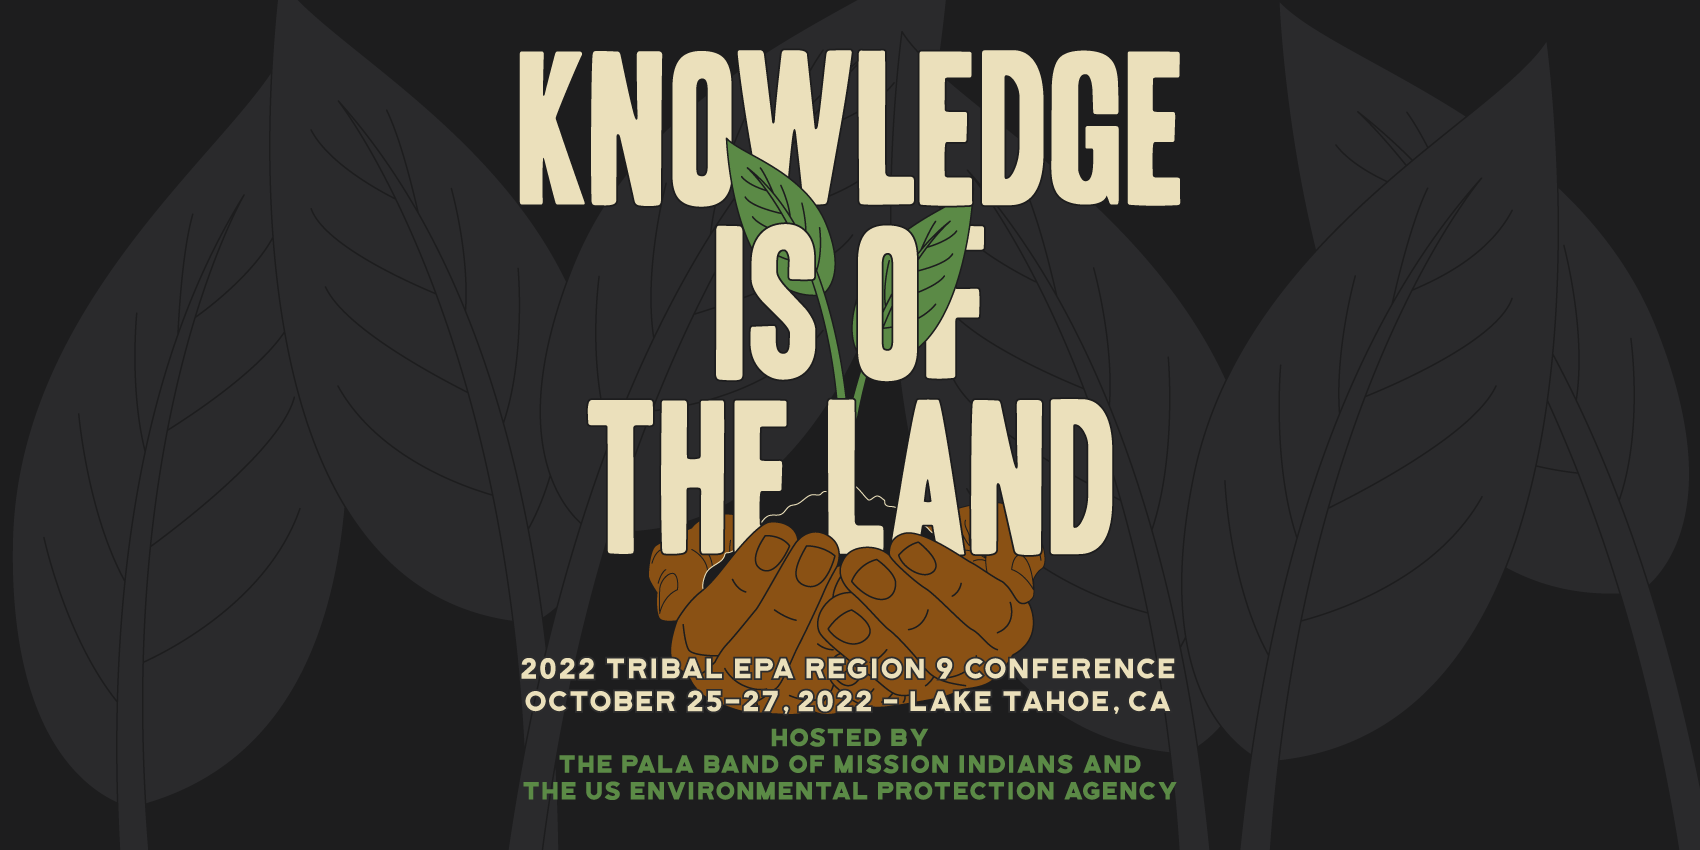 Tribal EPA Region 9 Environmental Protection Agency California Nevada Arizona Logo Conference Dates 2022